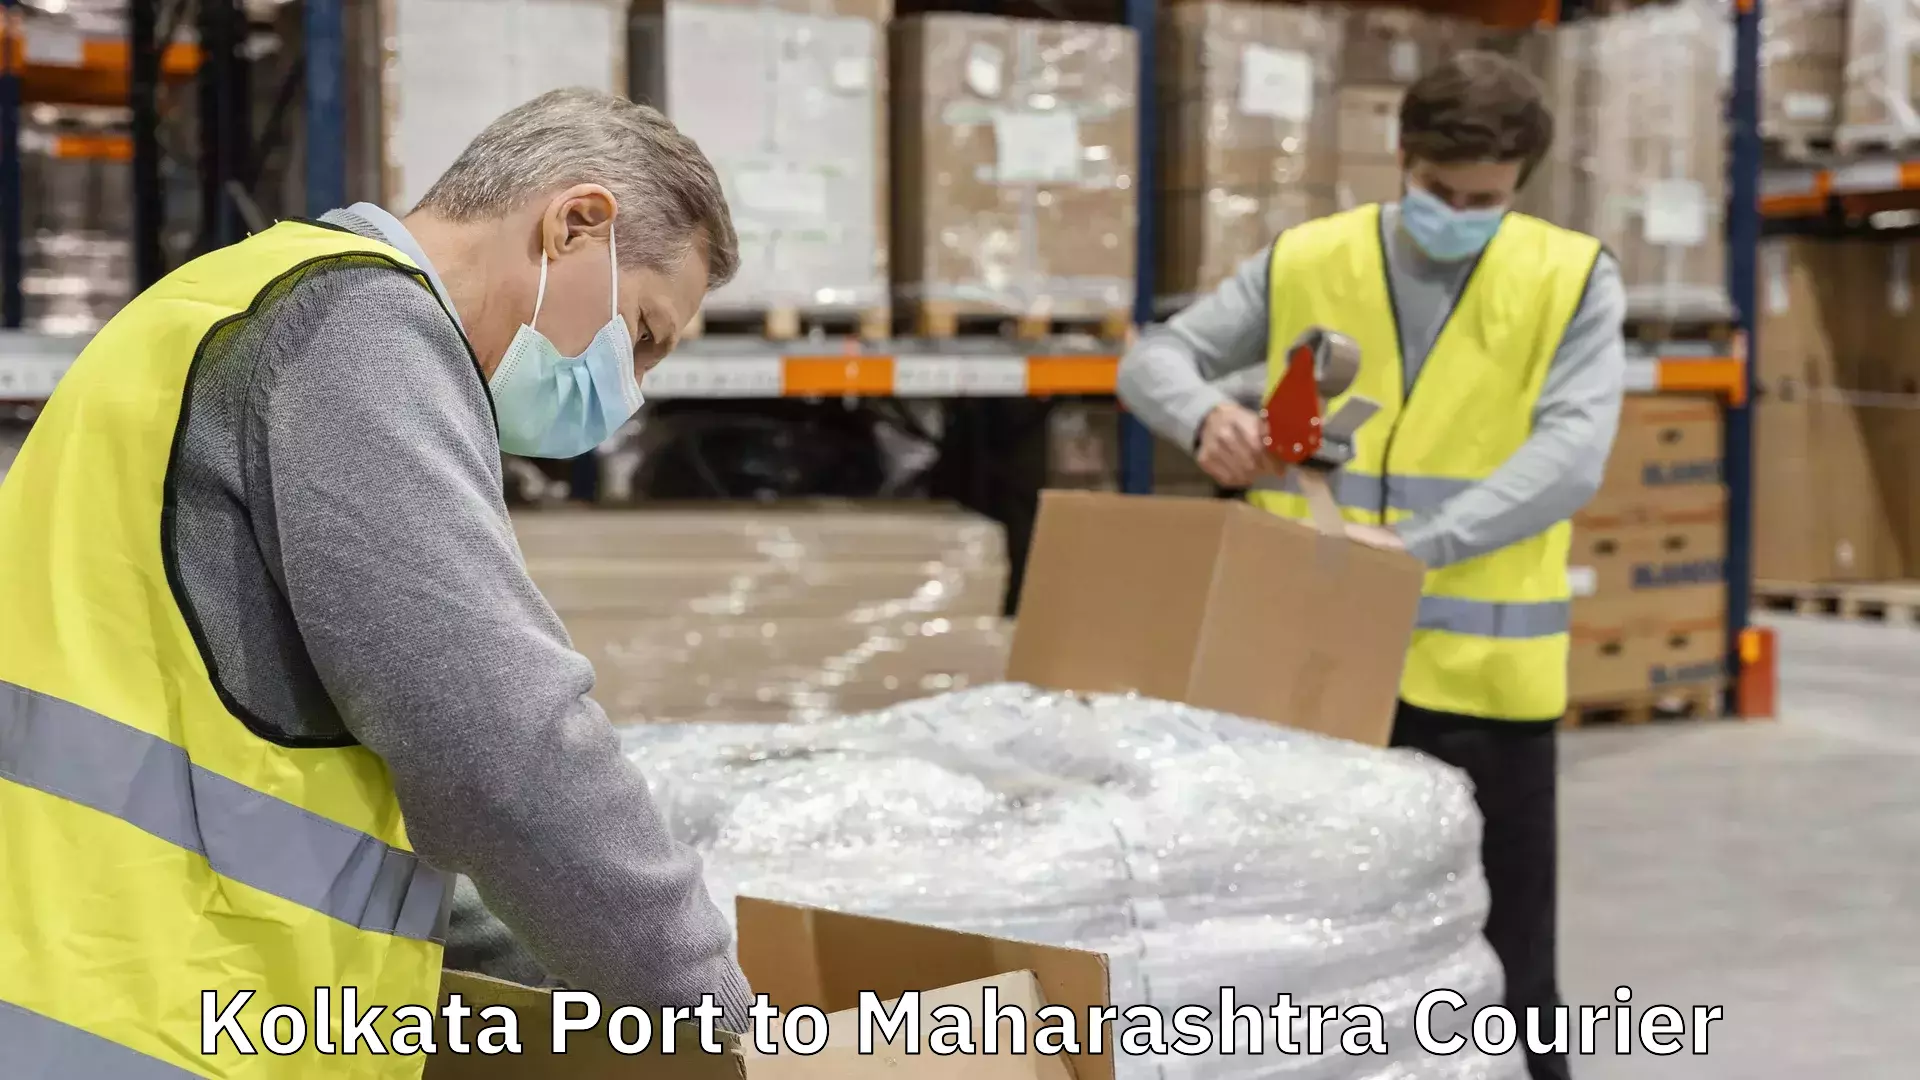 Doorstep delivery service Kolkata Port to Maharashtra